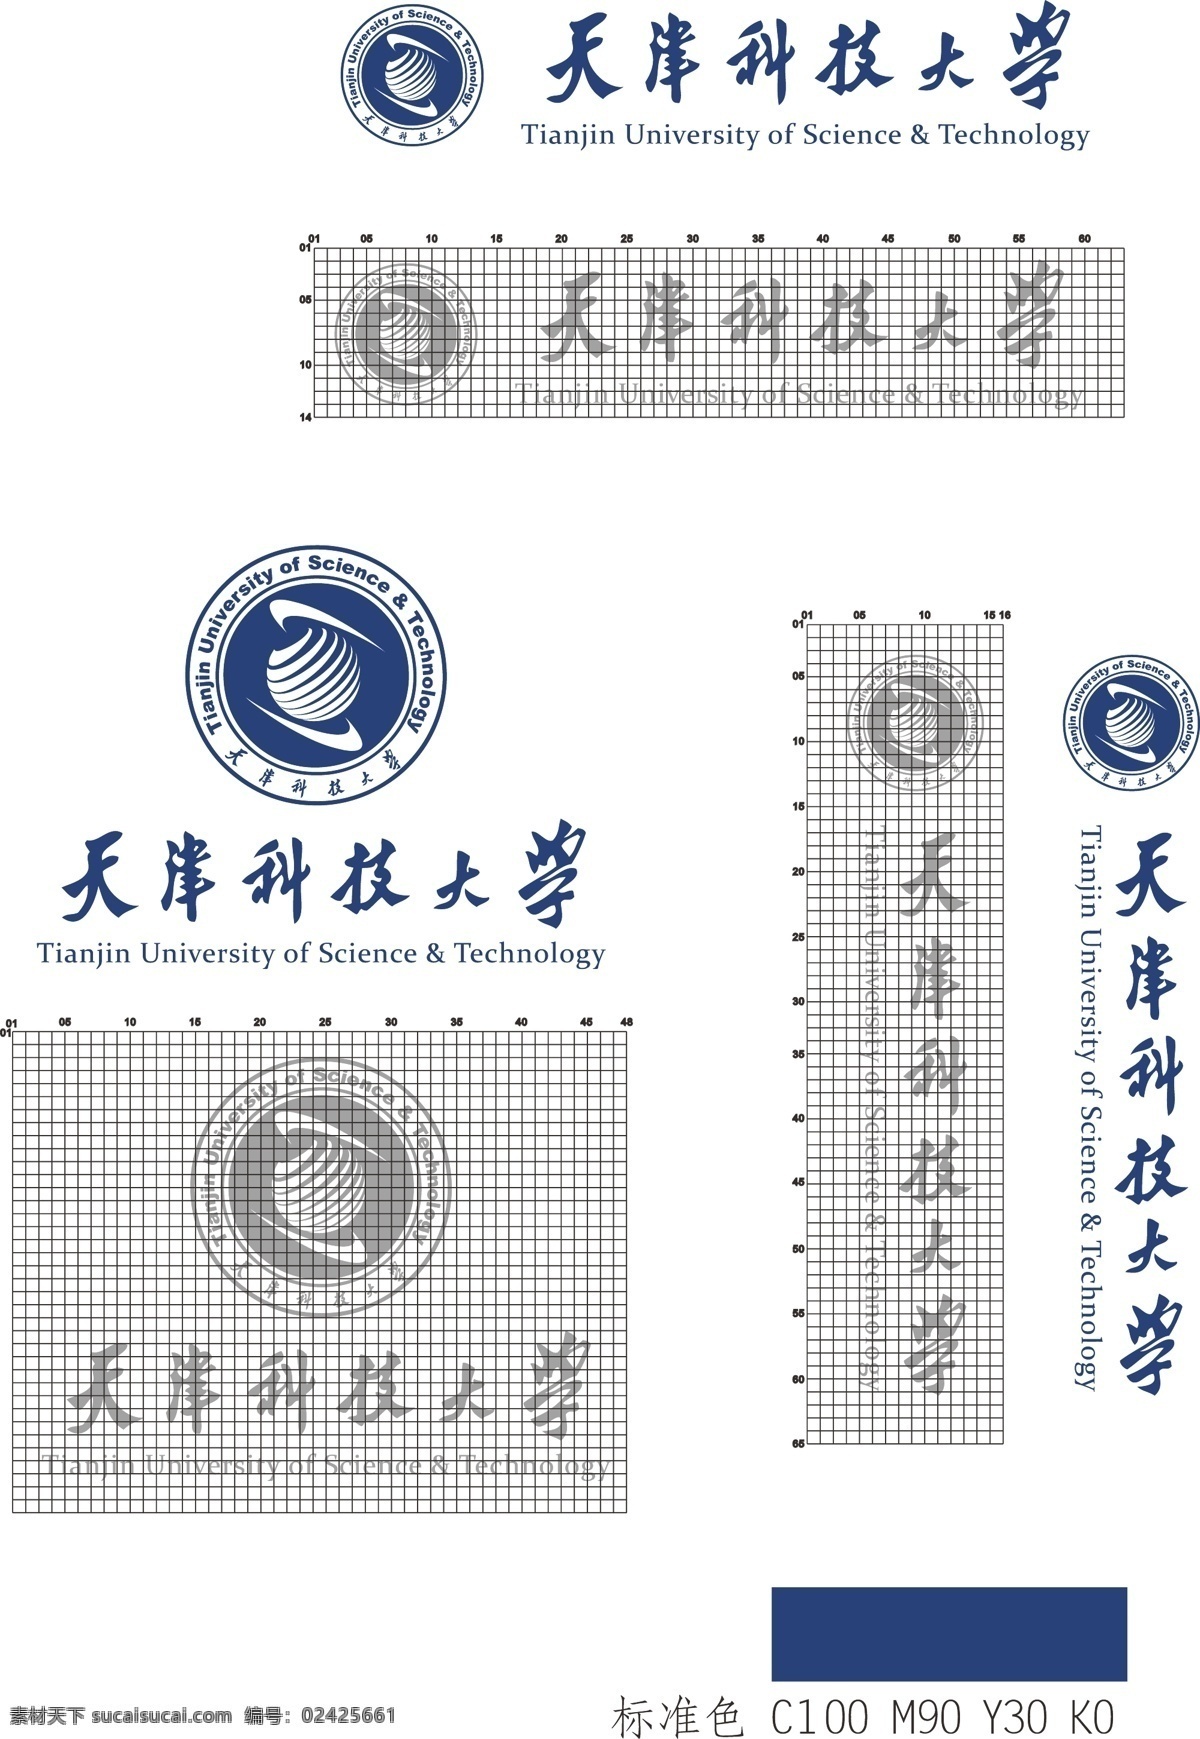 天津 科技 大学 标志 组合 天津科技大学 标志组合 校徽 科技大学 logo 蓝色 标准制图 公共标识标志 标识标志图标 矢量